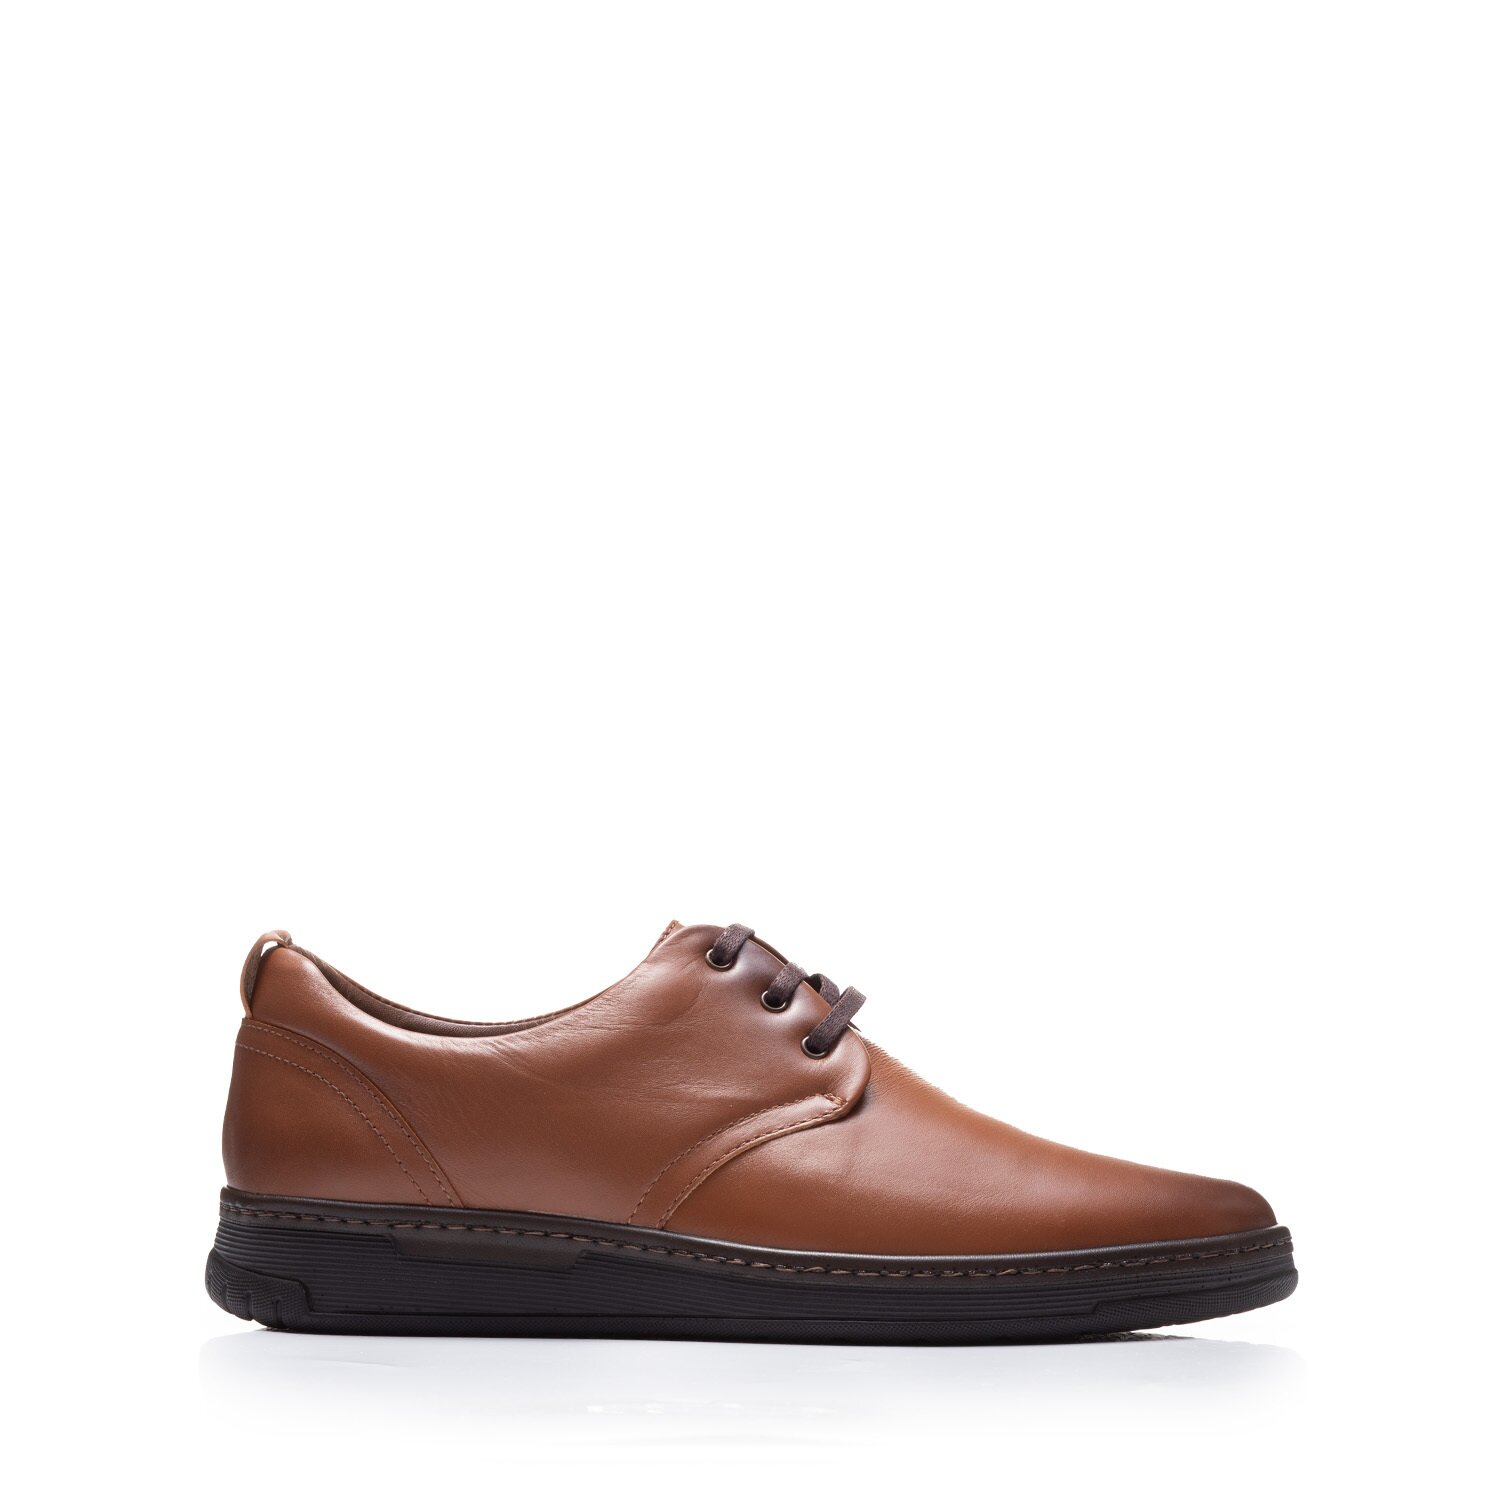 Pantofi casual bărbați din piele naturală, Leofex - 975 Cognac Box